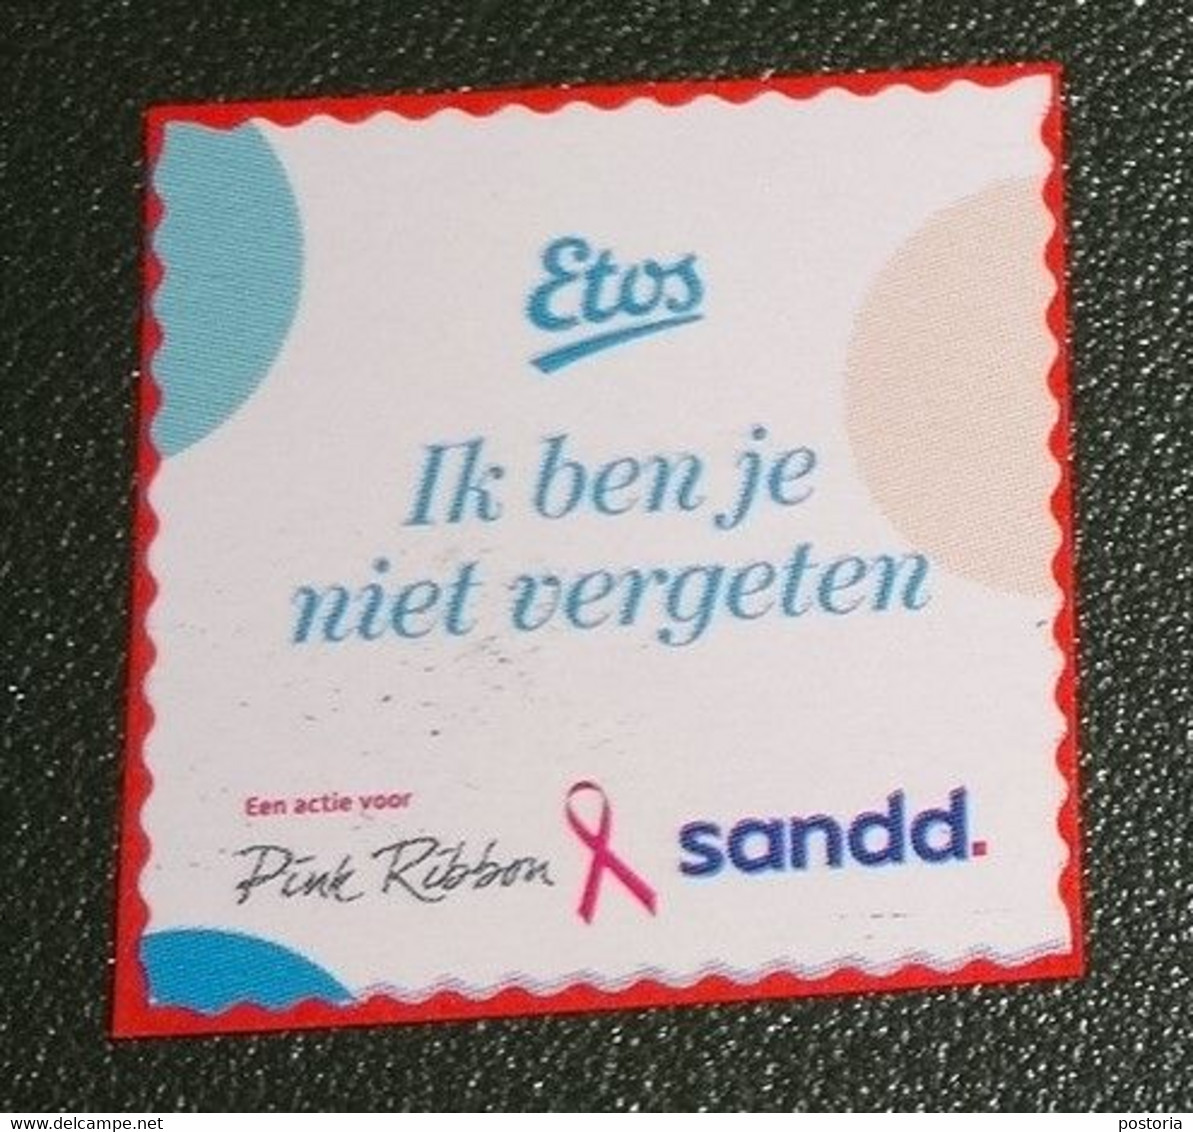 Nederland - Sandd - Gebruikt Onafgeweekt - Cancelled On Paper - Etos - Ik Ben Je Niet Vergeten - Ribbon - Gebraucht